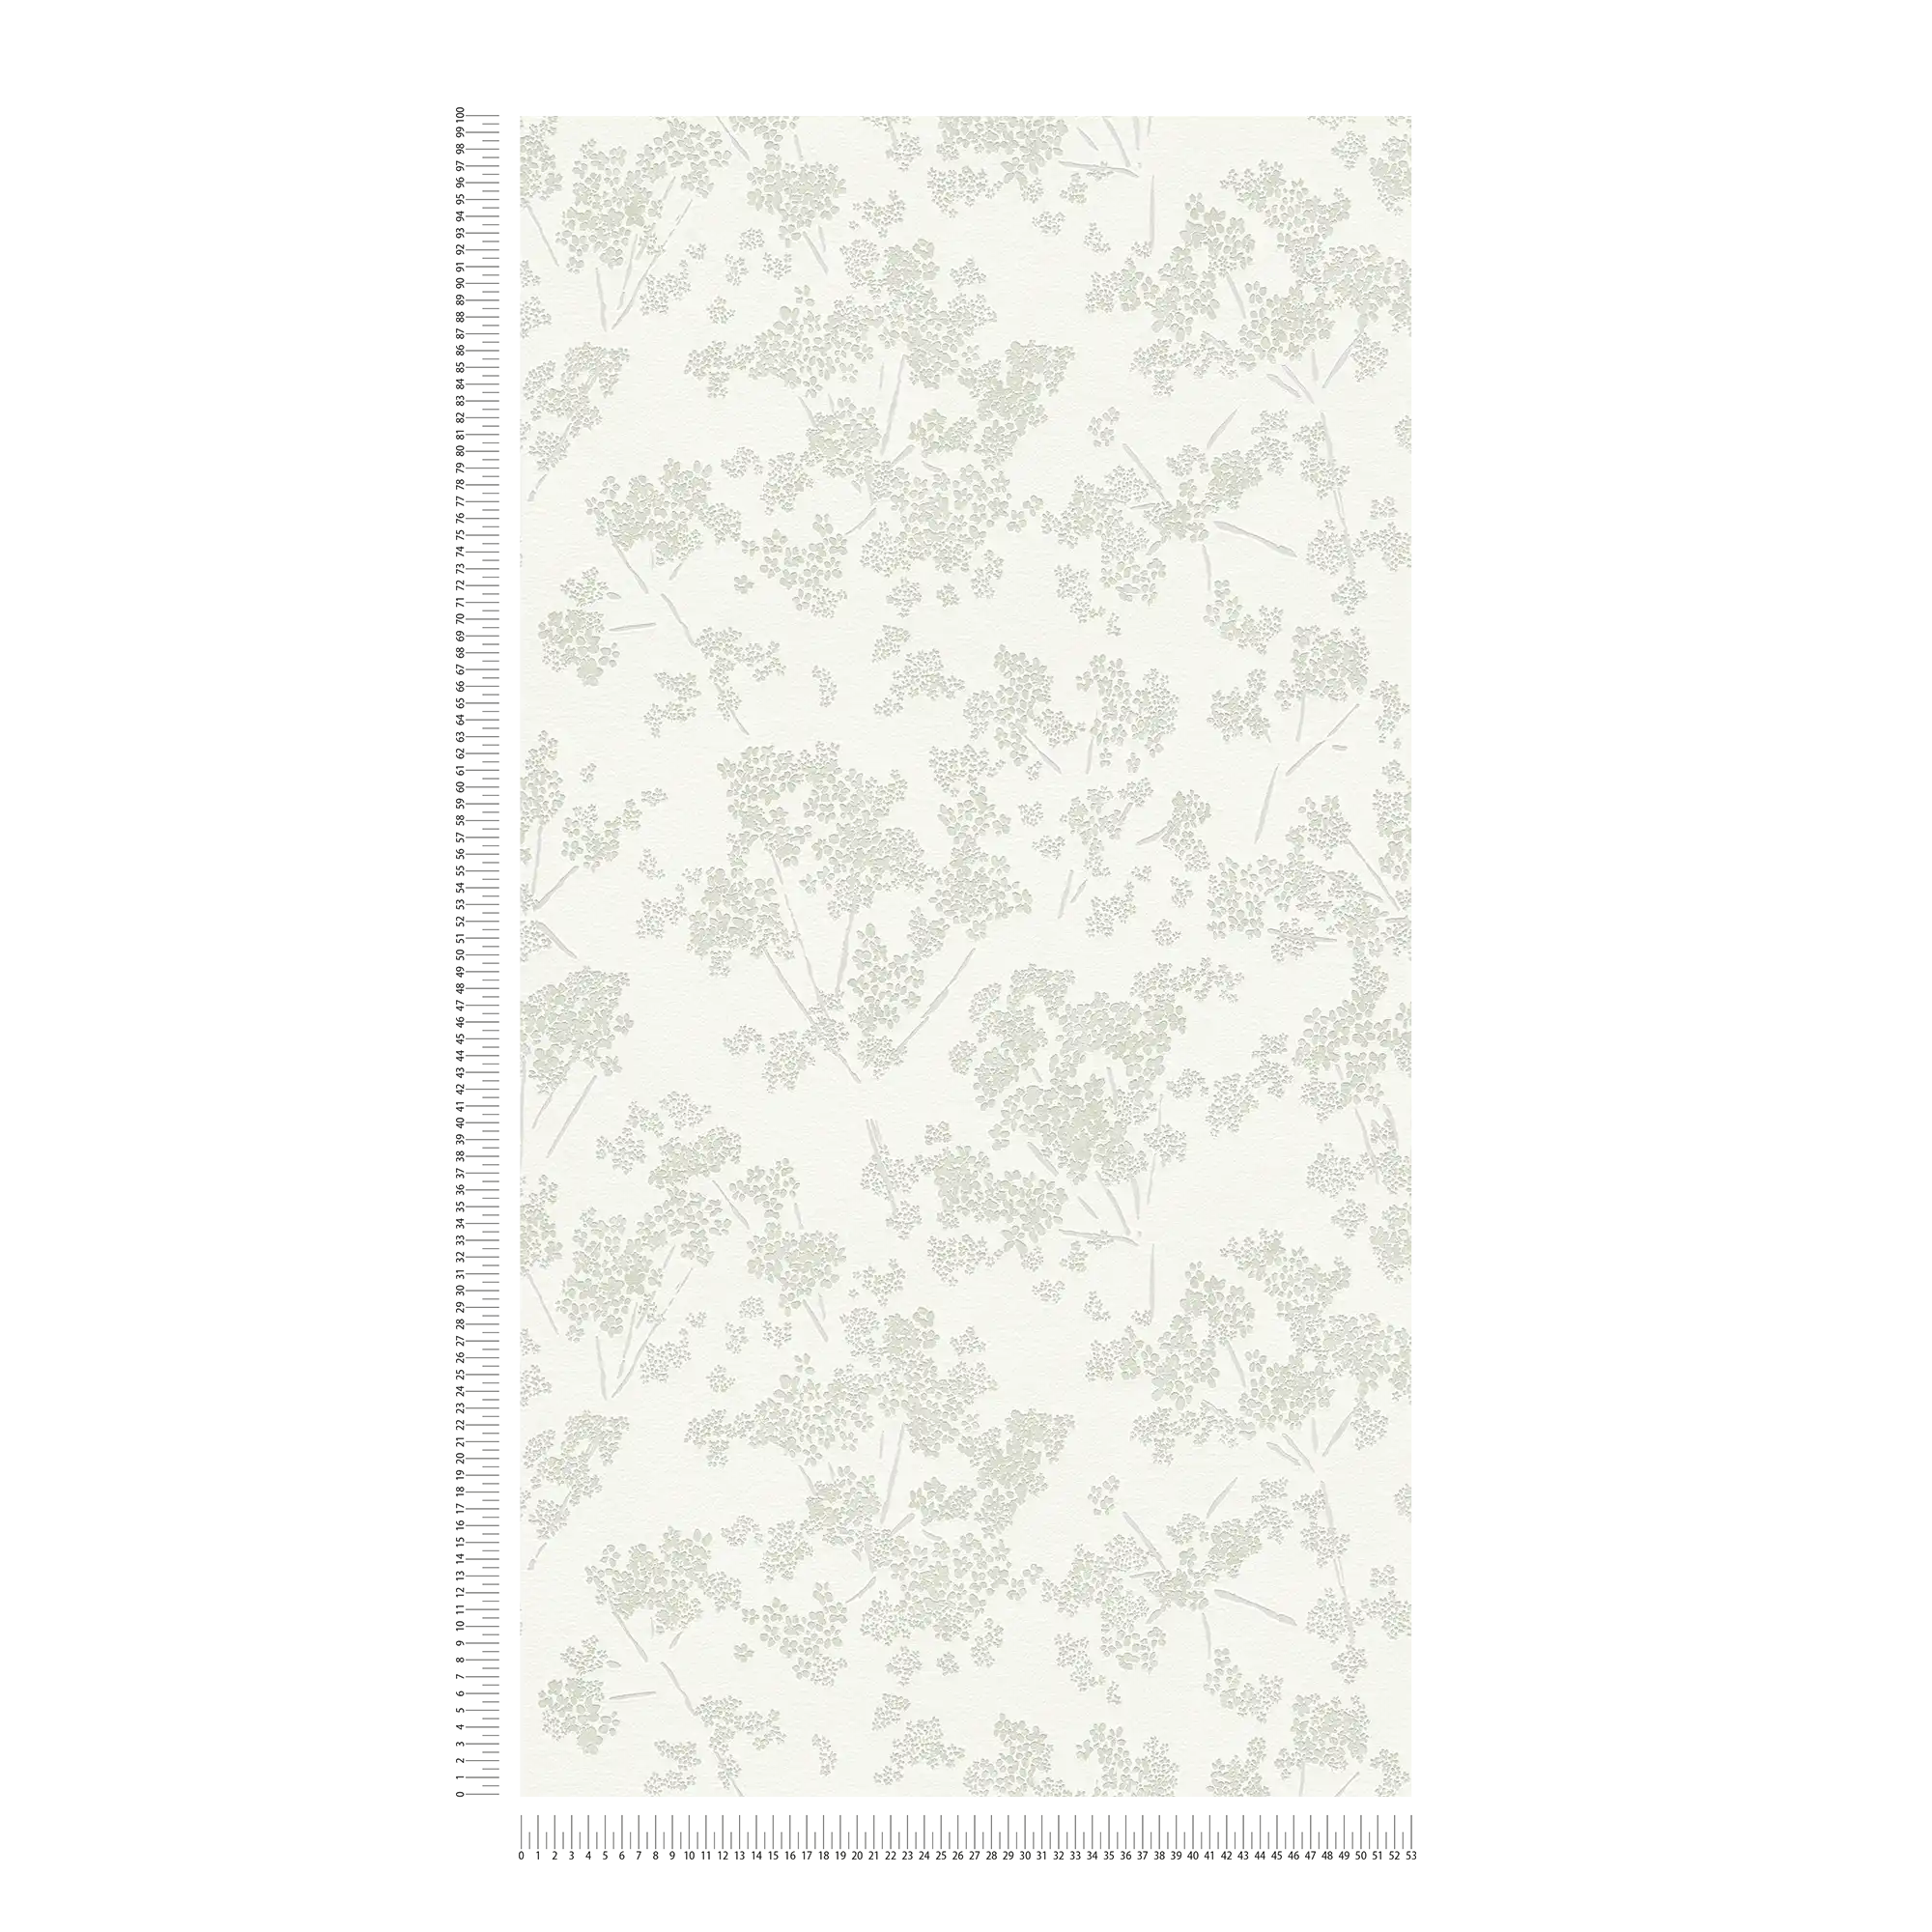             Vliesbehang met bloemenmotief - wit, groen, grijs
        